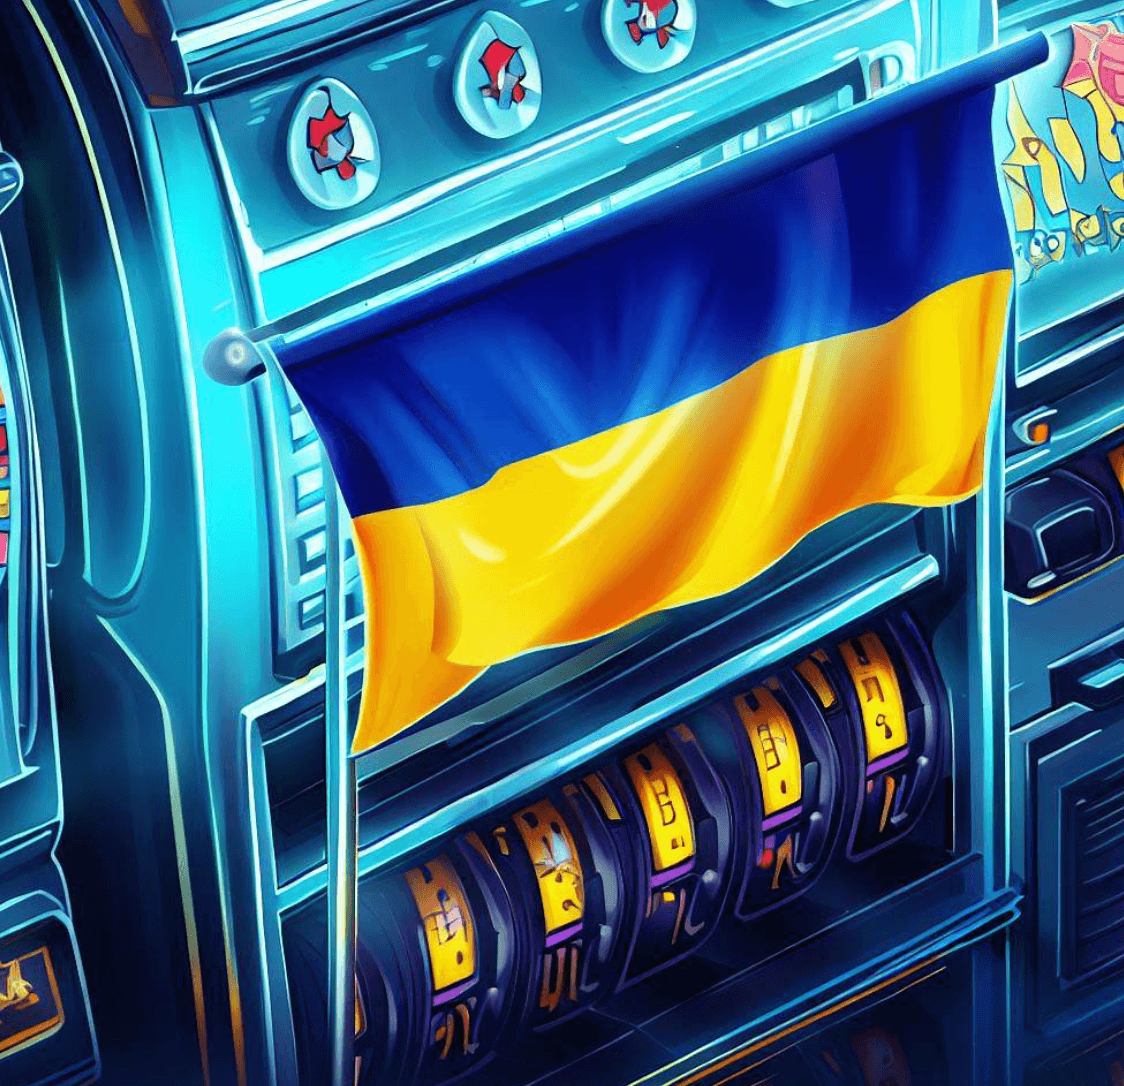 Microgaming slot machines at Goxbet online casino Ukraine